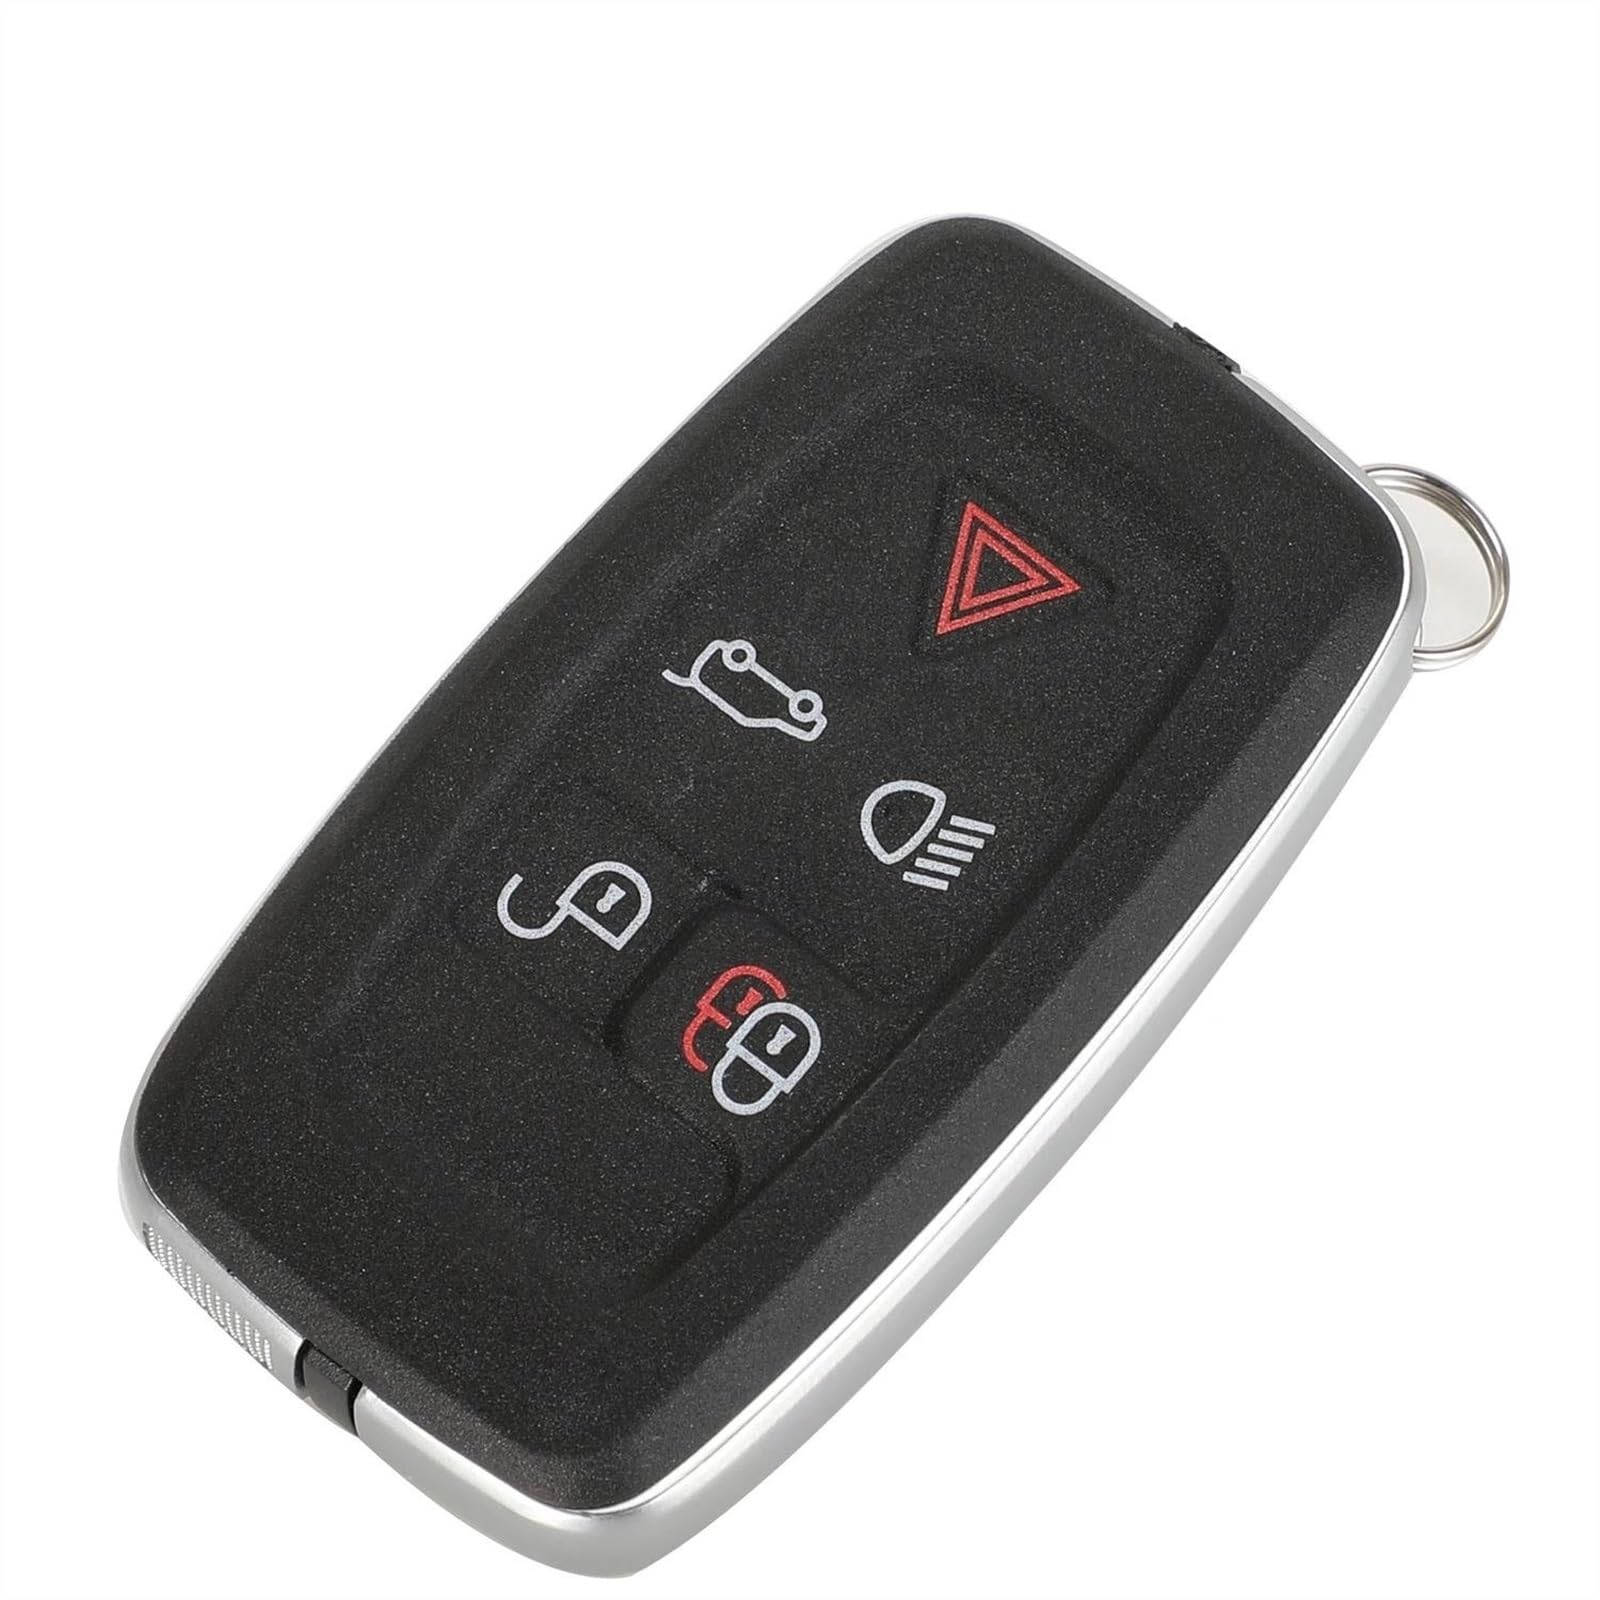 Autoschlüssel Hülle Autoschlüsselgehäuse Schlüsselanhänger Abdeckung 5 Taste für L&and R&over für RANGE ROVER Sport LR4 für Vogue 2010-2013 Autoschlüssel Shell Cover von SICOTTON